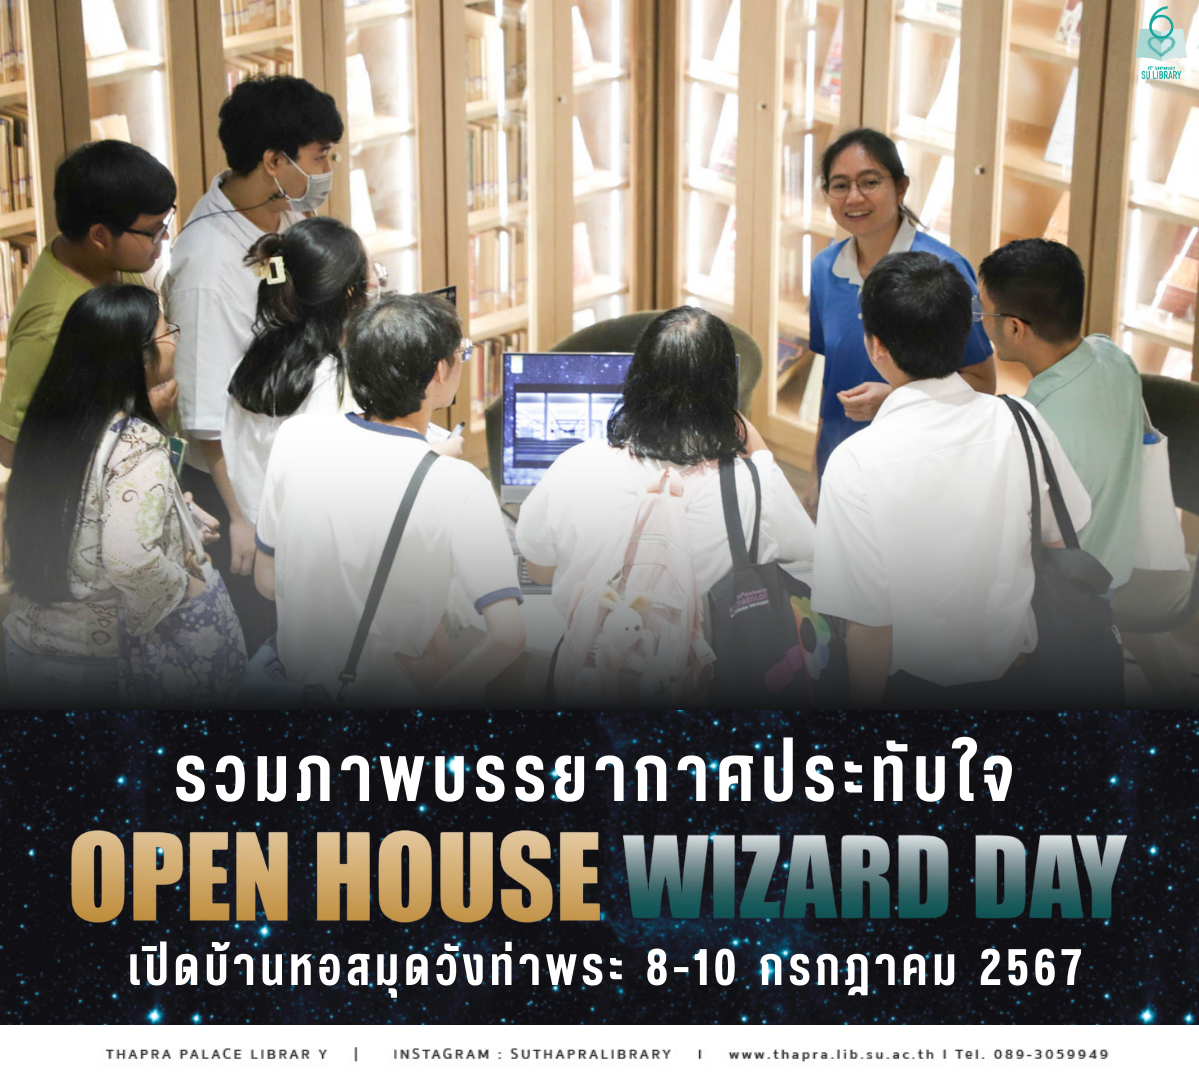 รวมภาพบรรยากาศงาน “Open House Wizard Day”กิจกรรมเปิดบ้านหอสมุดวังท่าพระ 8-10 กรกฎาคม 2567